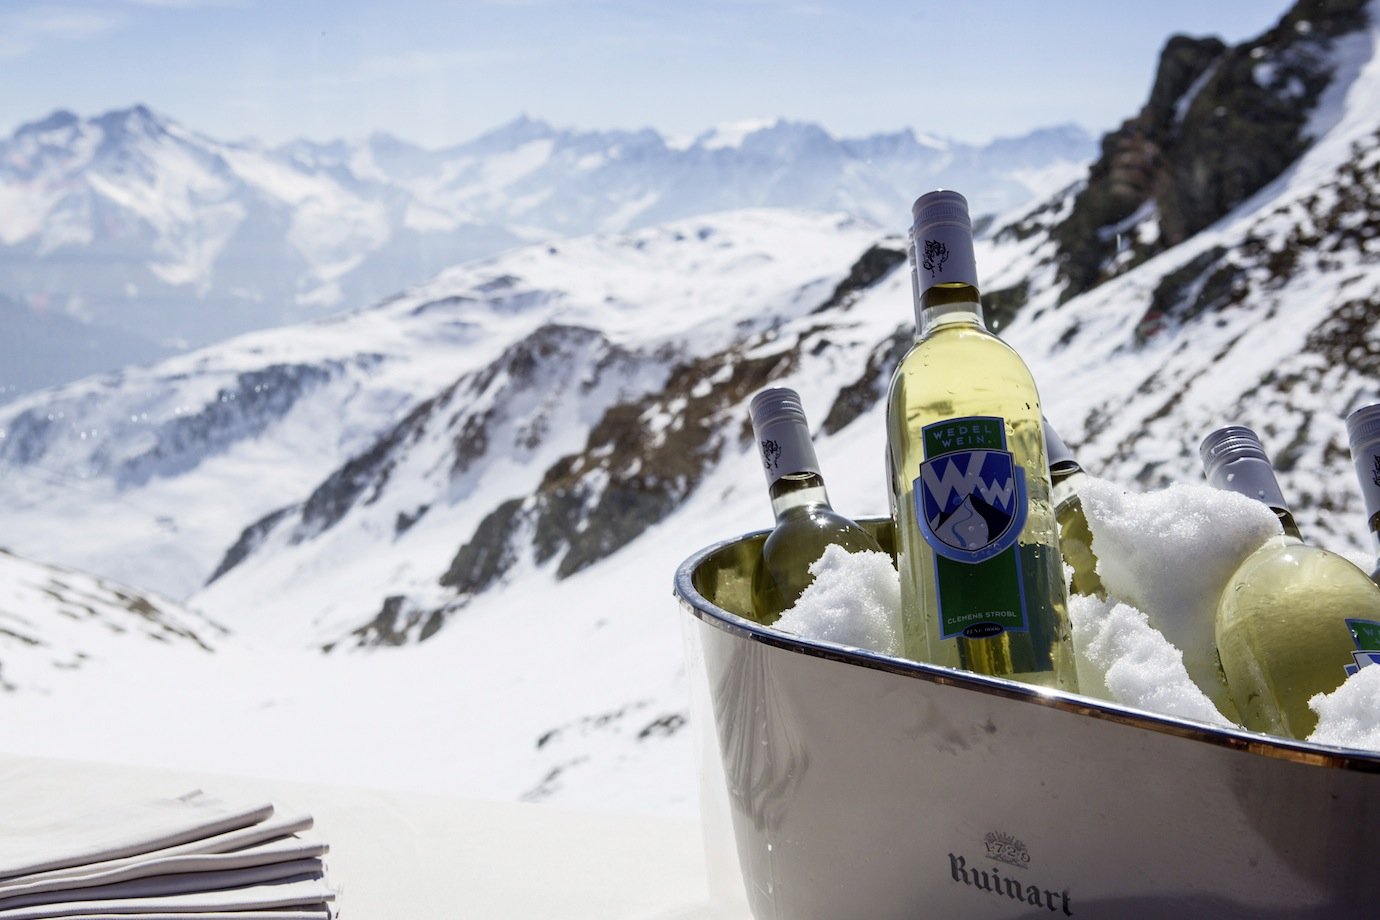 Event - 6. WINZER WEDELCUP 2017: Wintersport meets Weinverkostung - wenn Österreichs Top-Winzer zum Skirennen antreten